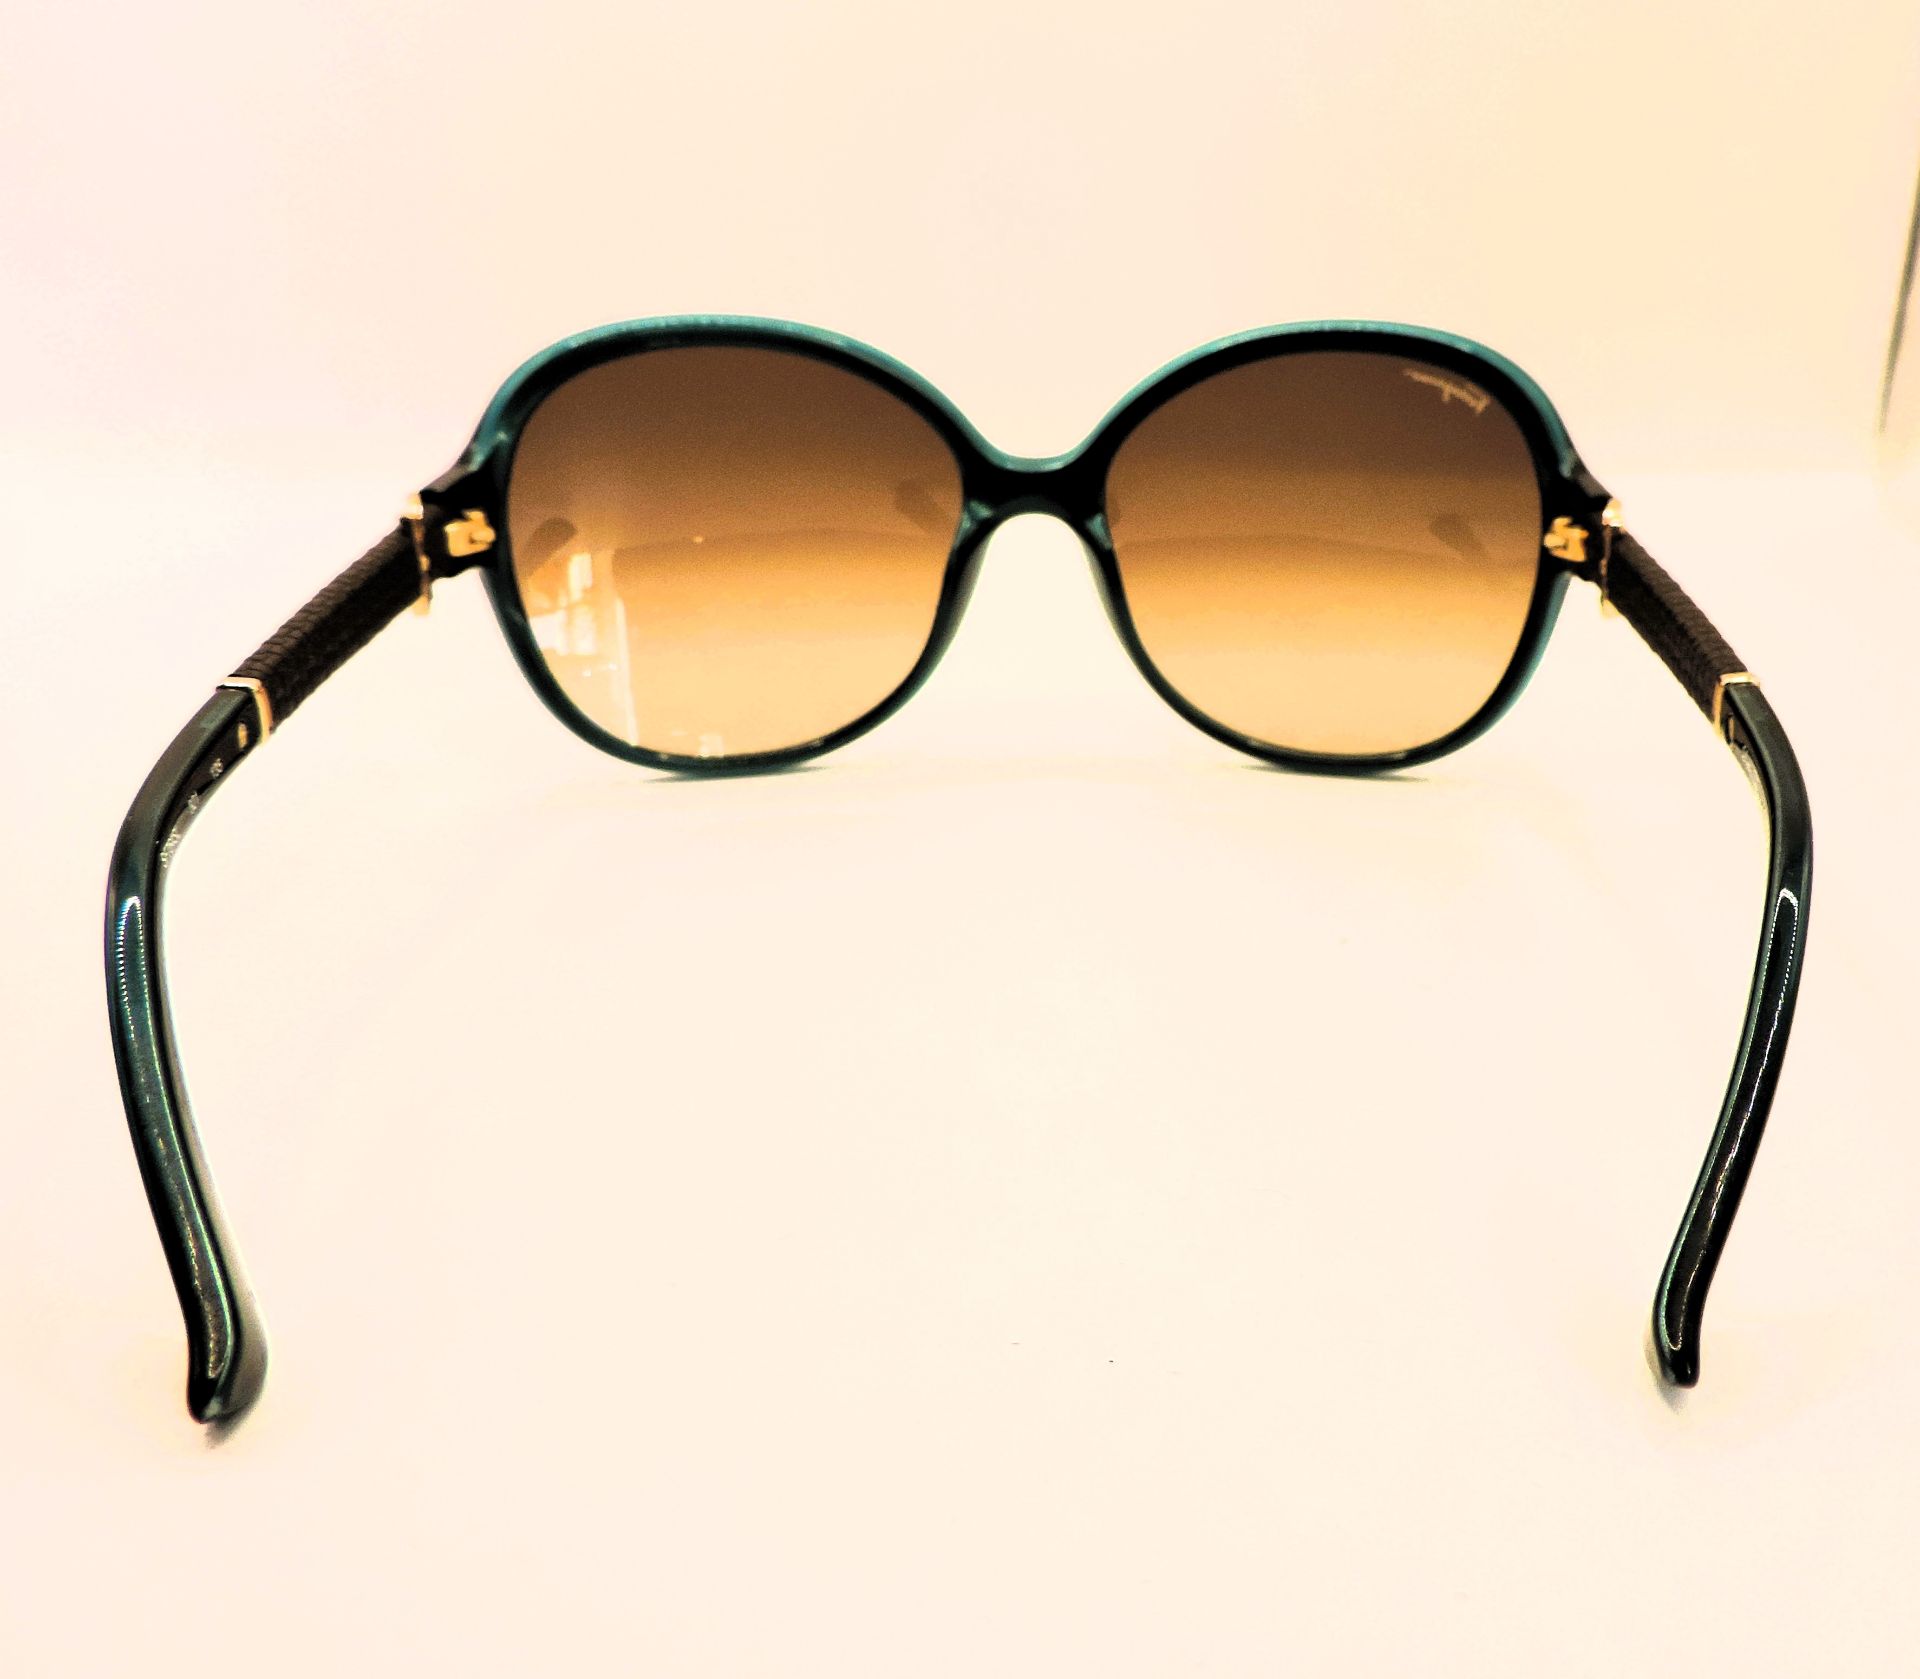 Salvatore Ferragamo Sunglasses SF764SL New With Case - Image 5 of 9